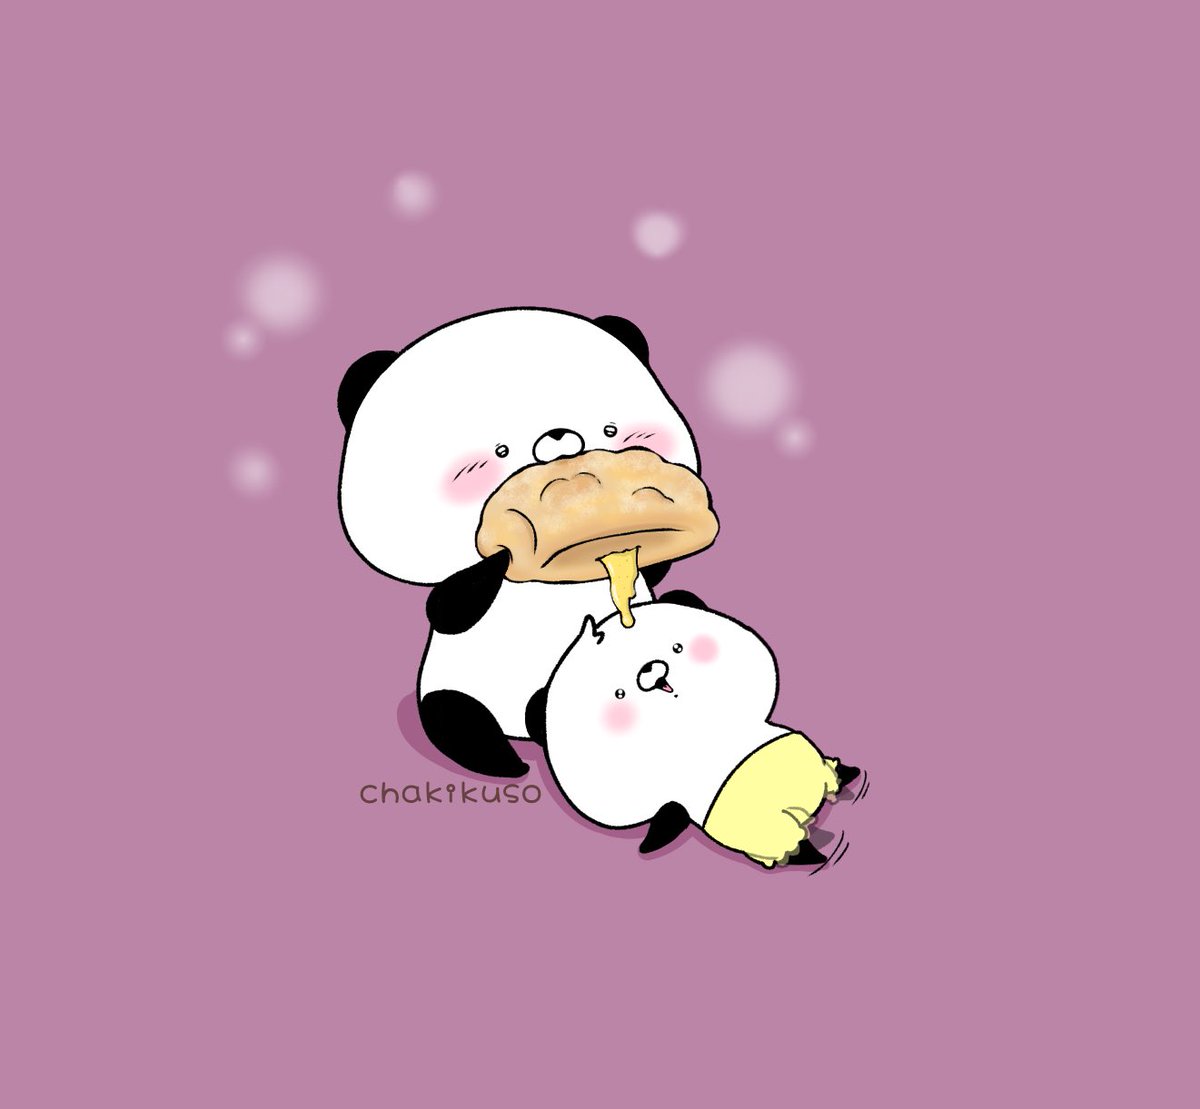 「シュークリームの日
#こころにパンダ 
#イラスト #シュークリーム 」|chakikusoのイラスト